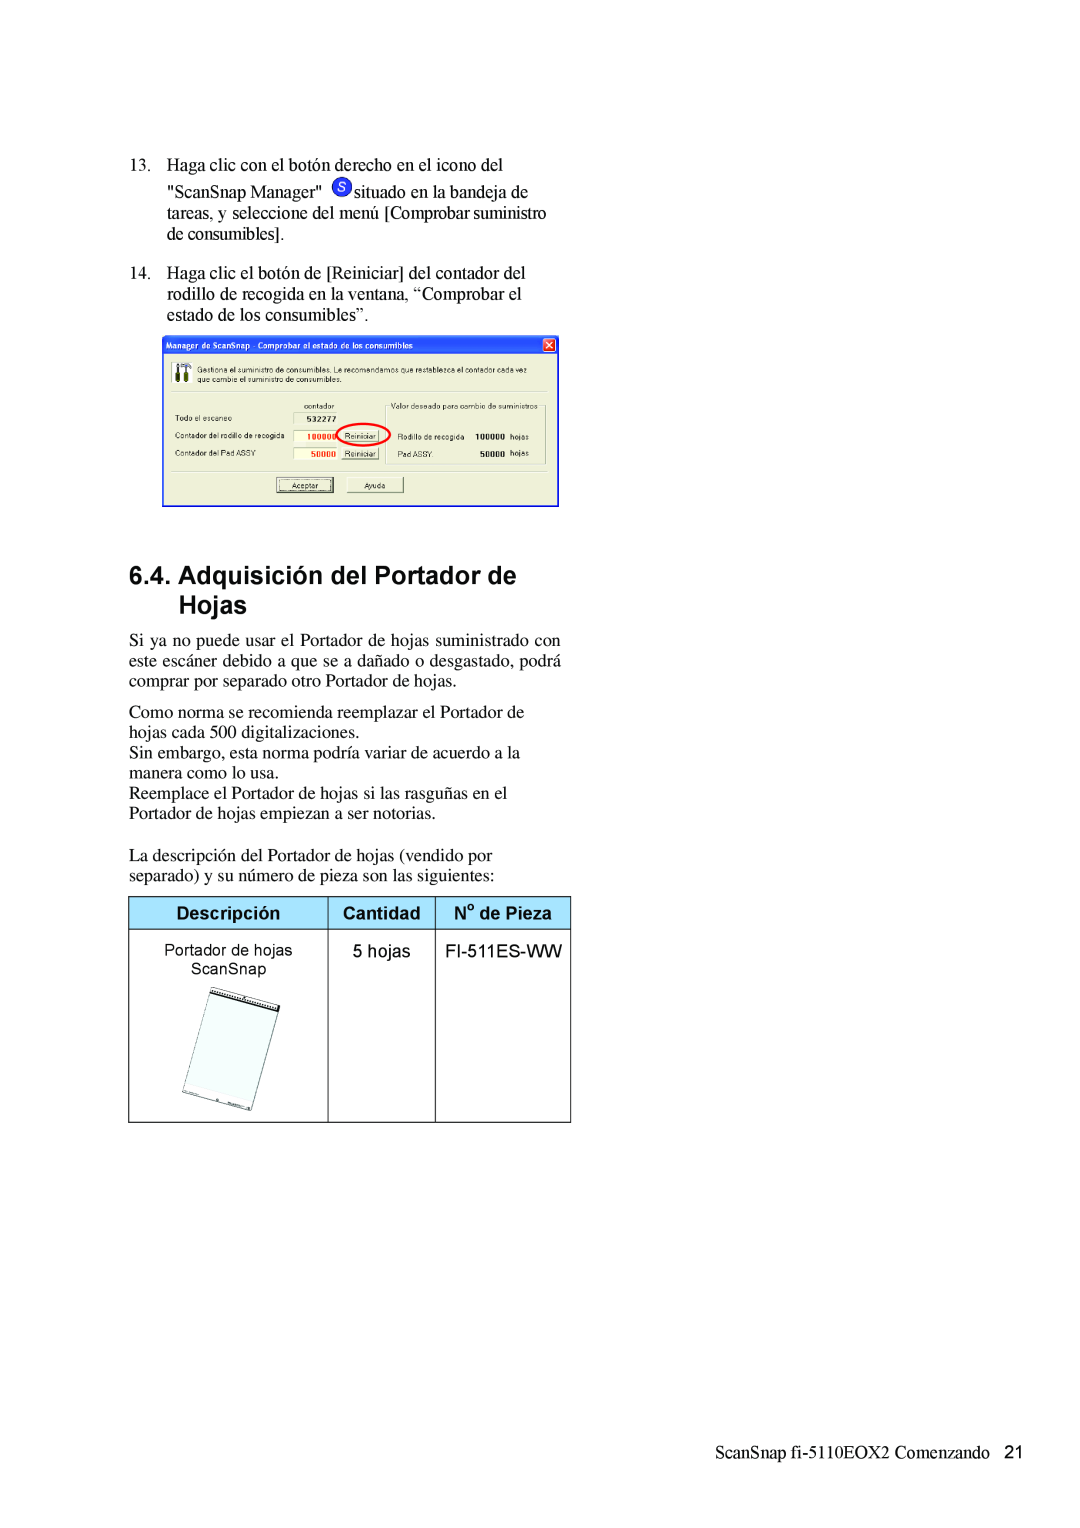 Fujitsu fi-5110EOX2 manual Adquisición del Portador de Hojas, Descripción, Cantidad, No de Pieza, hojas, FI-511ES-WW 